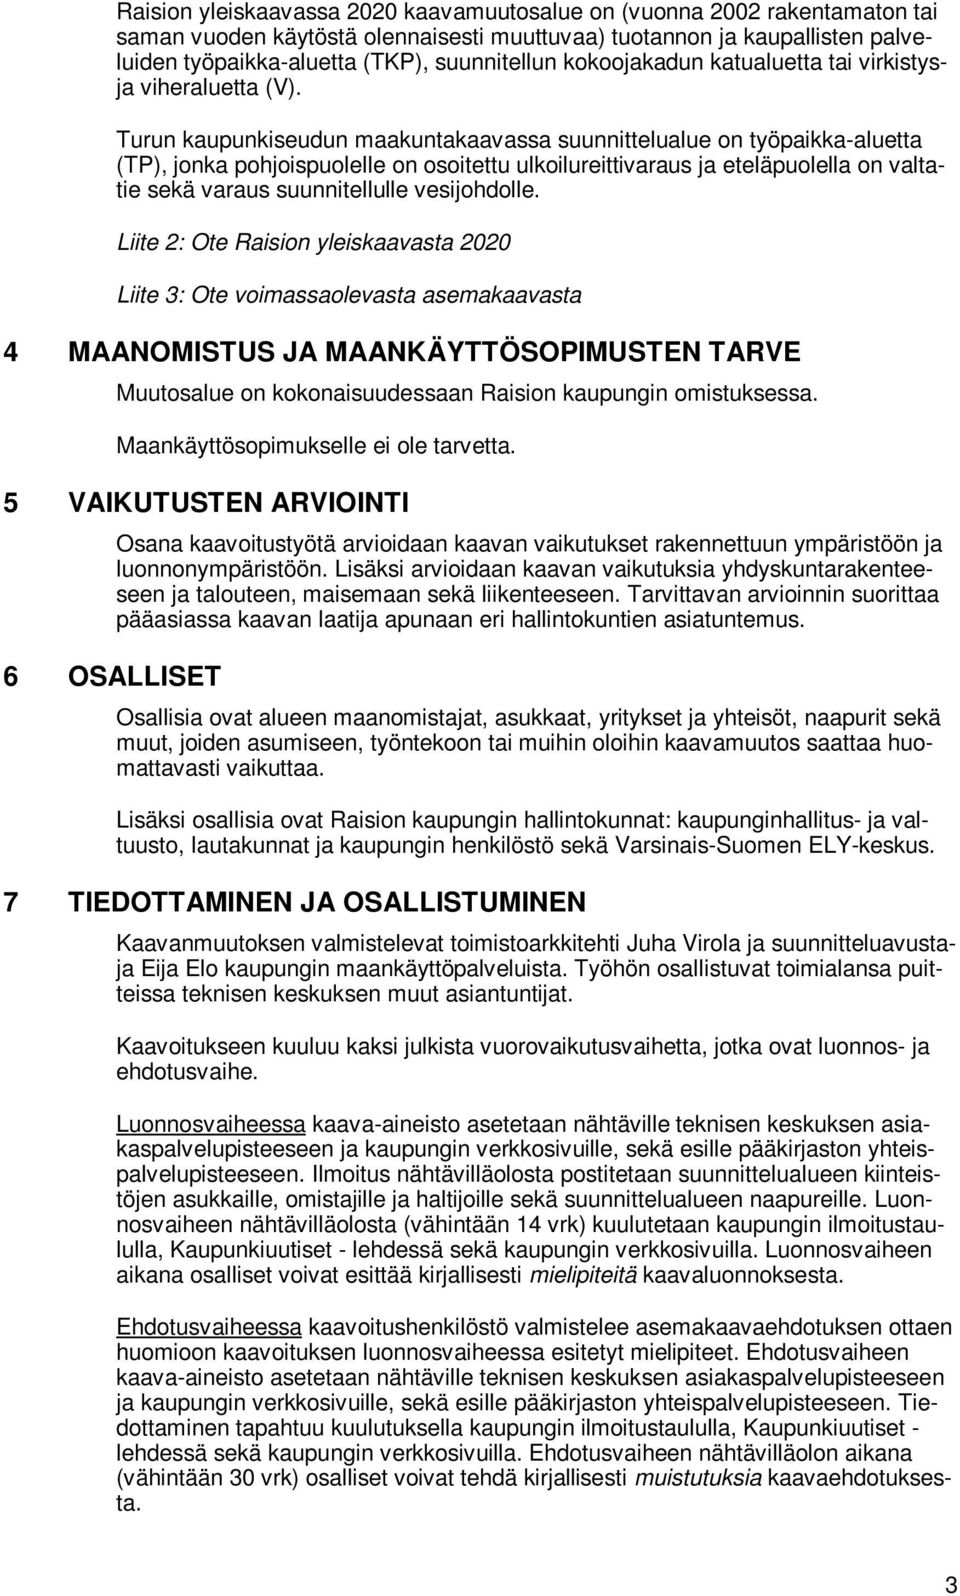 Turun kaupunkiseudun maakuntakaavassa suunnittelualue on työpaikka-aluetta (TP), jonka pohjoispuolelle on osoitettu ulkoilureittivaraus ja eteläpuolella on valtatie sekä varaus suunnitellulle